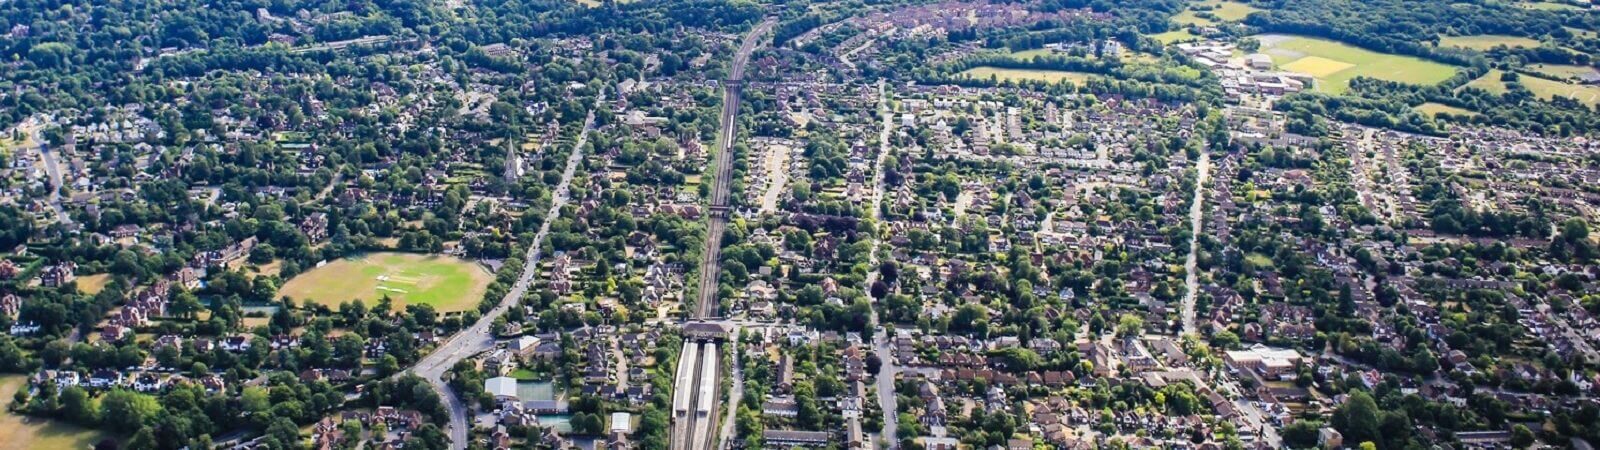 Aerial shot of urban area